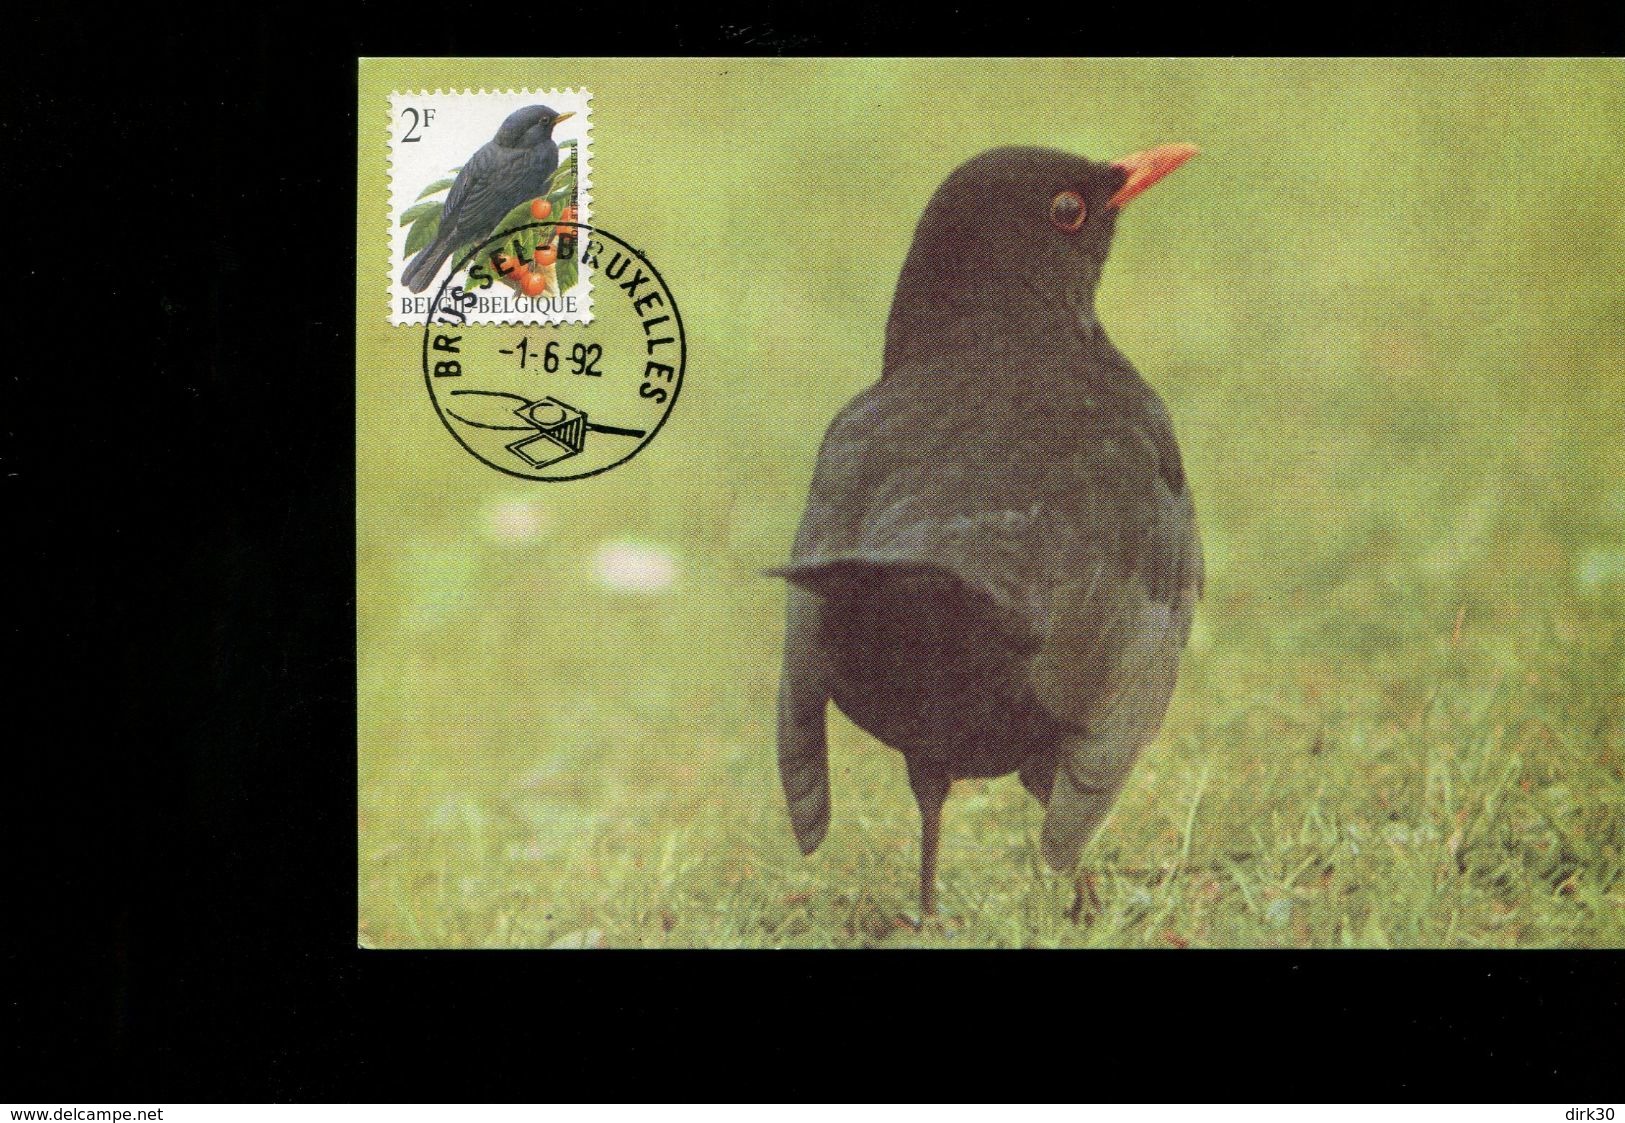 Belgie Buzin Vogels Birds 2458 Maximumkaart Brussel 1/6/1992 - 1991-2000